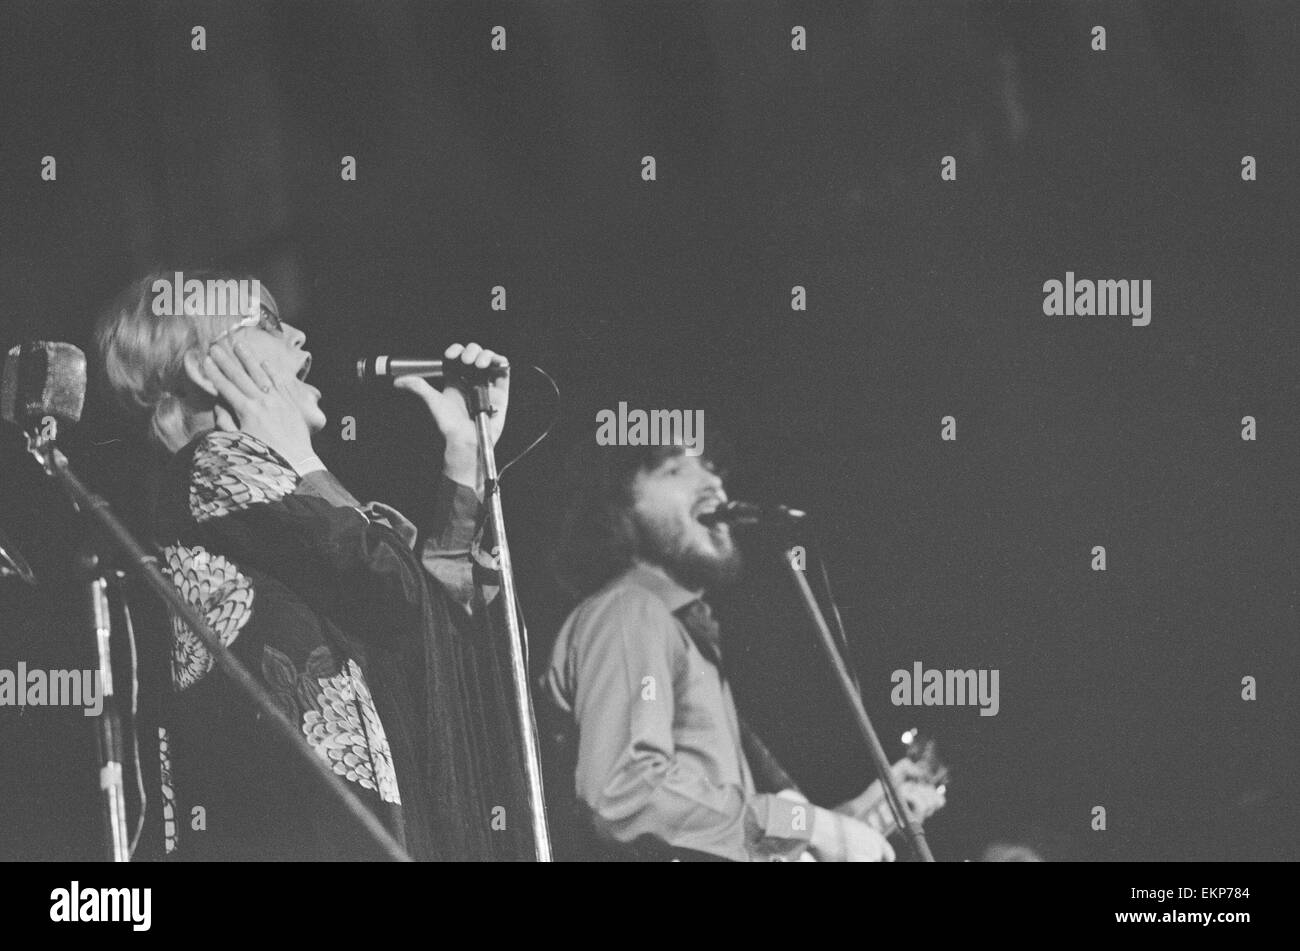 Delaney & Bonnie & Freunde Musikkonzert in Birmingham Town Hall 4. Dezember 1969. Hinweis: Konzert statt bei schwachem Licht mit keine Flash-Fotografie erlaubt *** lokalen Caption *** Delaney Bramlett Bonnie Bramlett Stockfoto